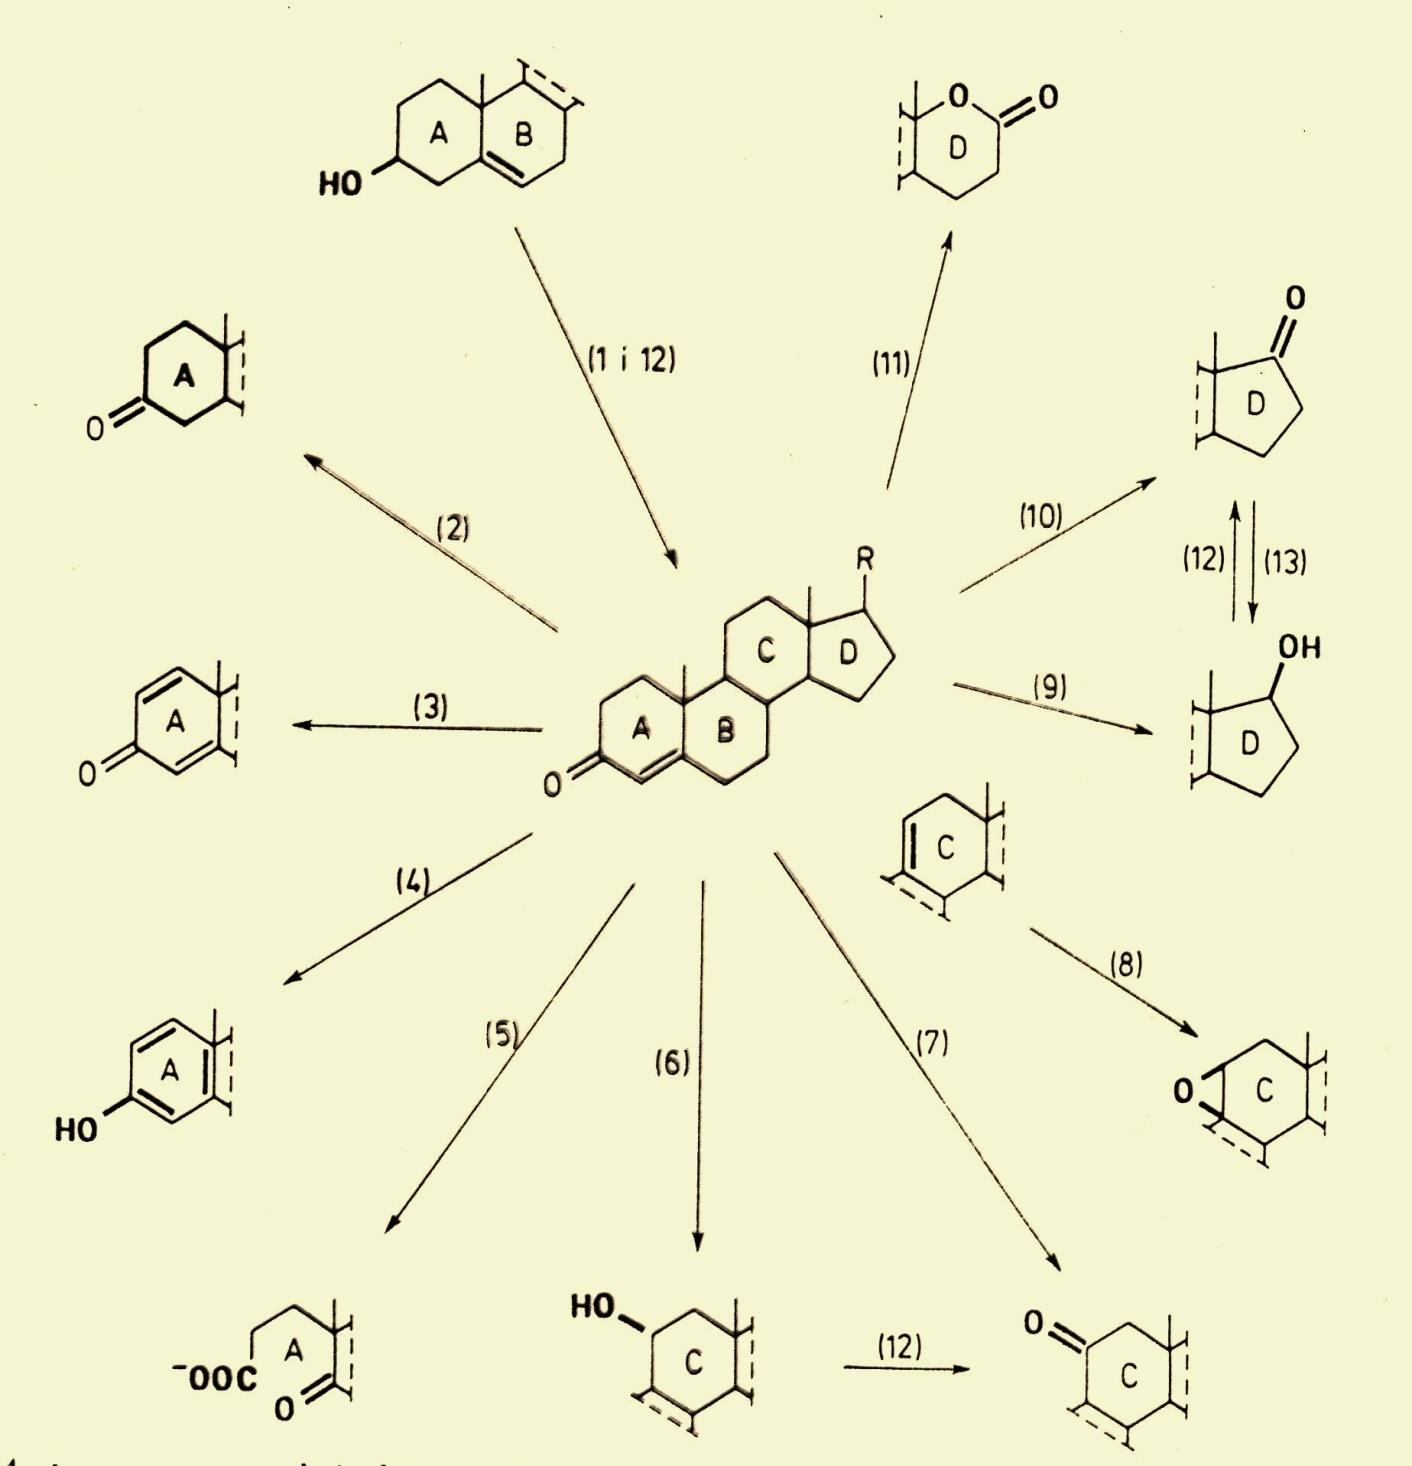 Podstawowe reakcje biotransformacji związków steroidowych 1- izomeryzacja połączona z utlenieniem grupy hydroksylowej 2 - uwodornienie podwójnego wiązania 3 - odwodornienie 4 - aromatyzacja 5